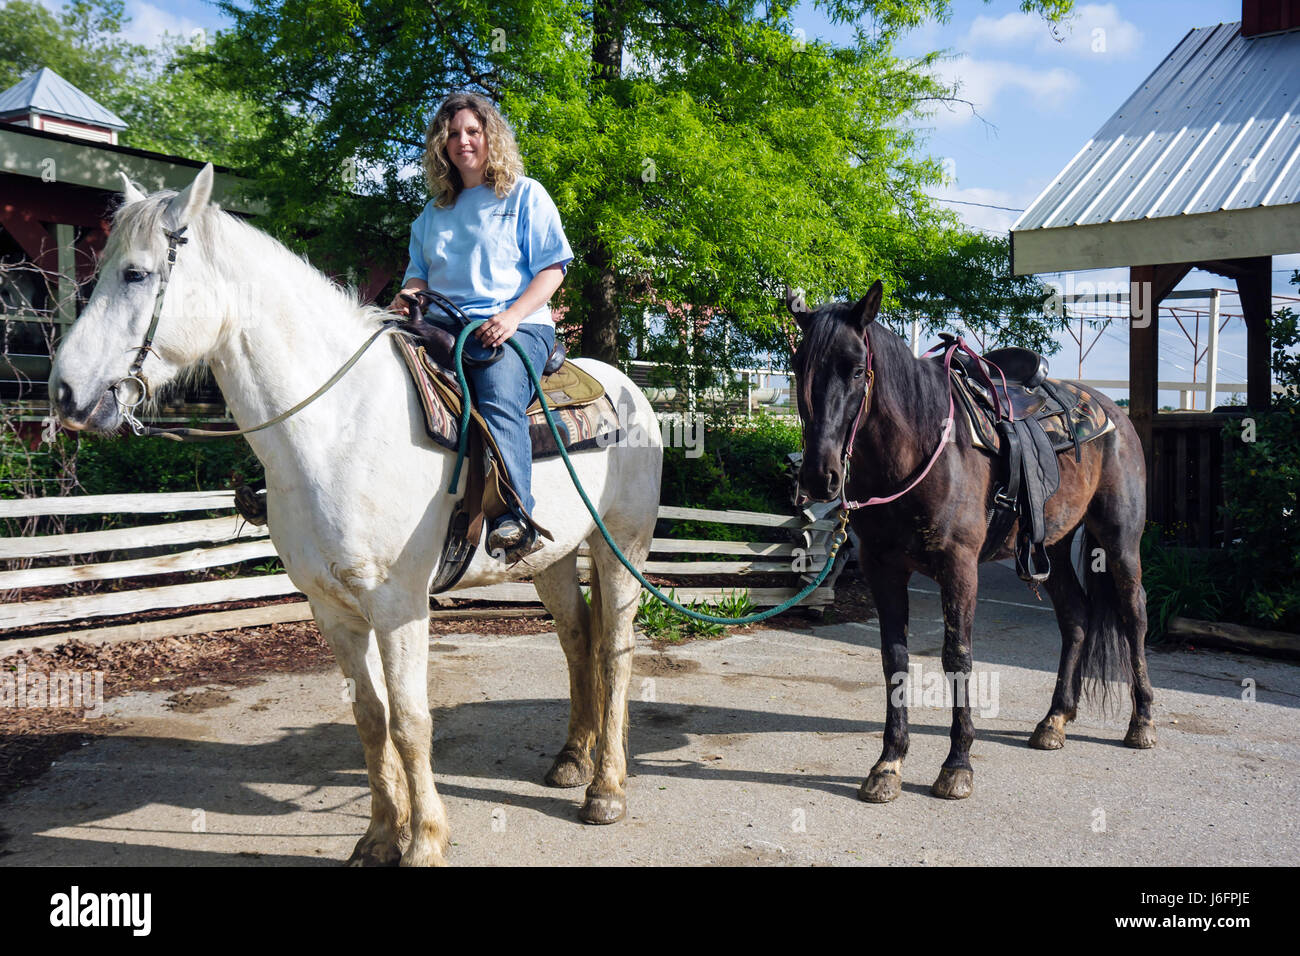 Sevierville Tennessee,Smoky Mountains,Five Oaks Riding stables,équitation,femme femme femme,blanc,cheval,animal,guide de sentier,travail,travail,emploi Banque D'Images